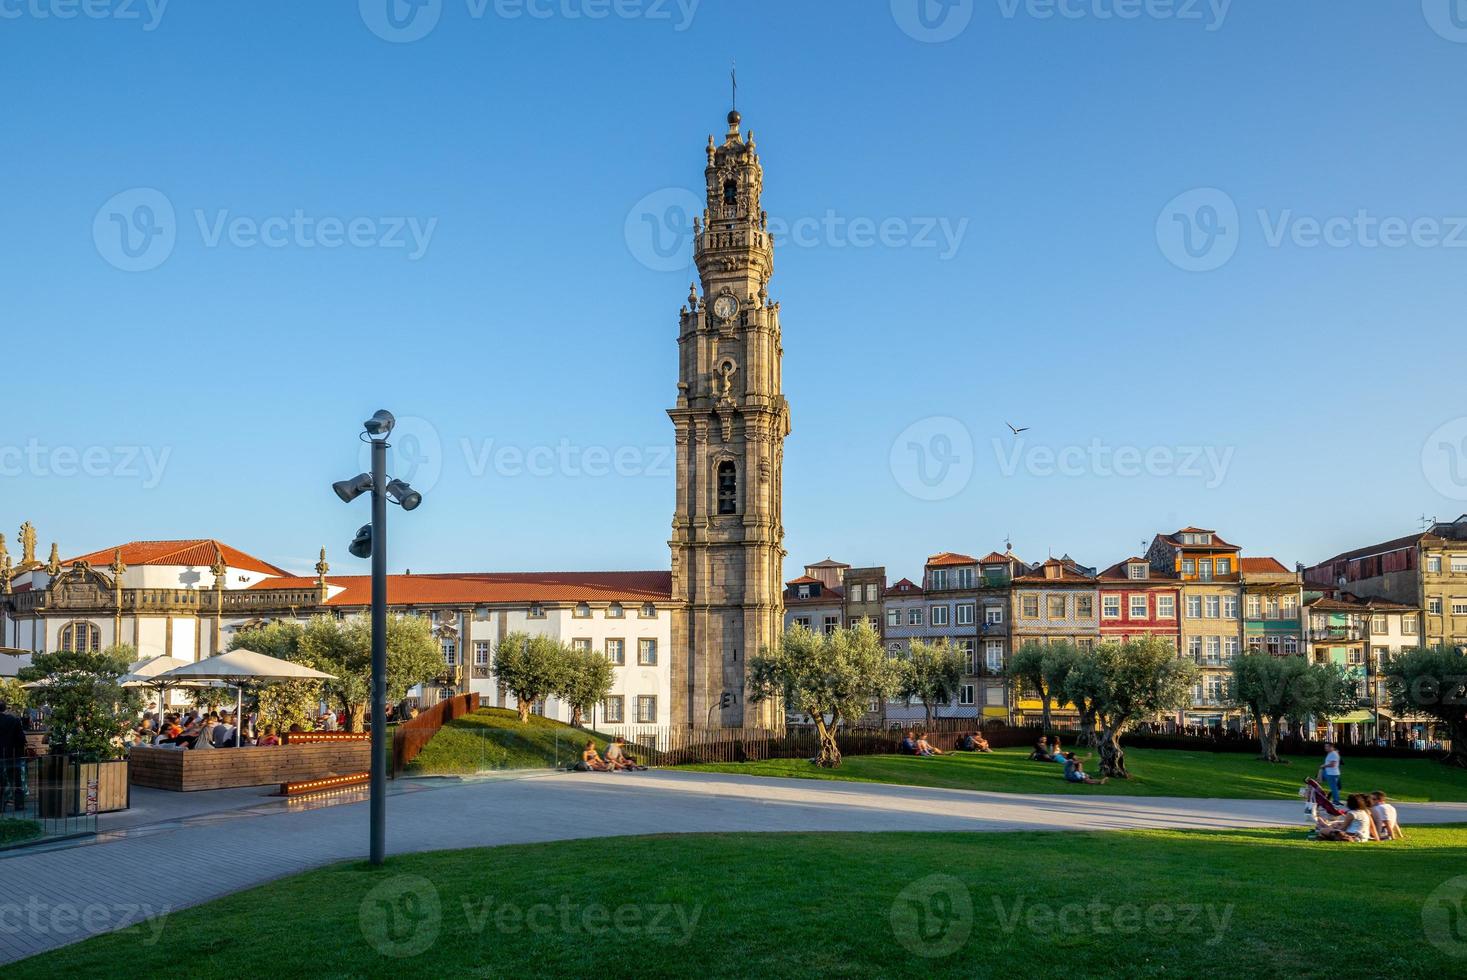 clerigos-turm ist ein glockenturm der clerigos-kirche in porto, portugal foto